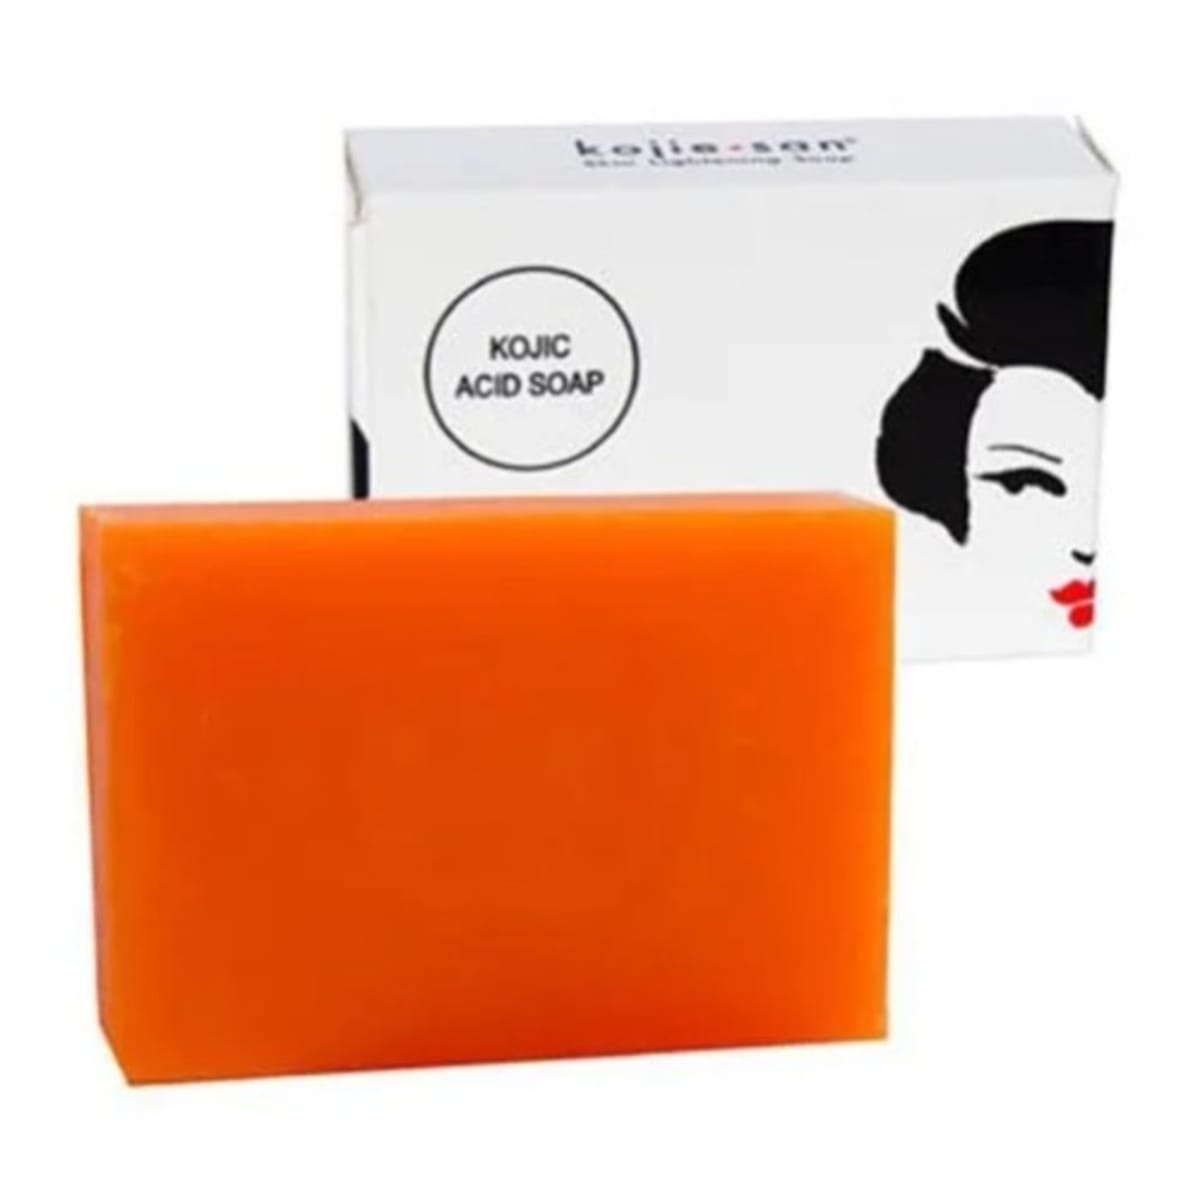 Kojie San Skin Lightening Kojic Acid Soap 2 Bars - 65g